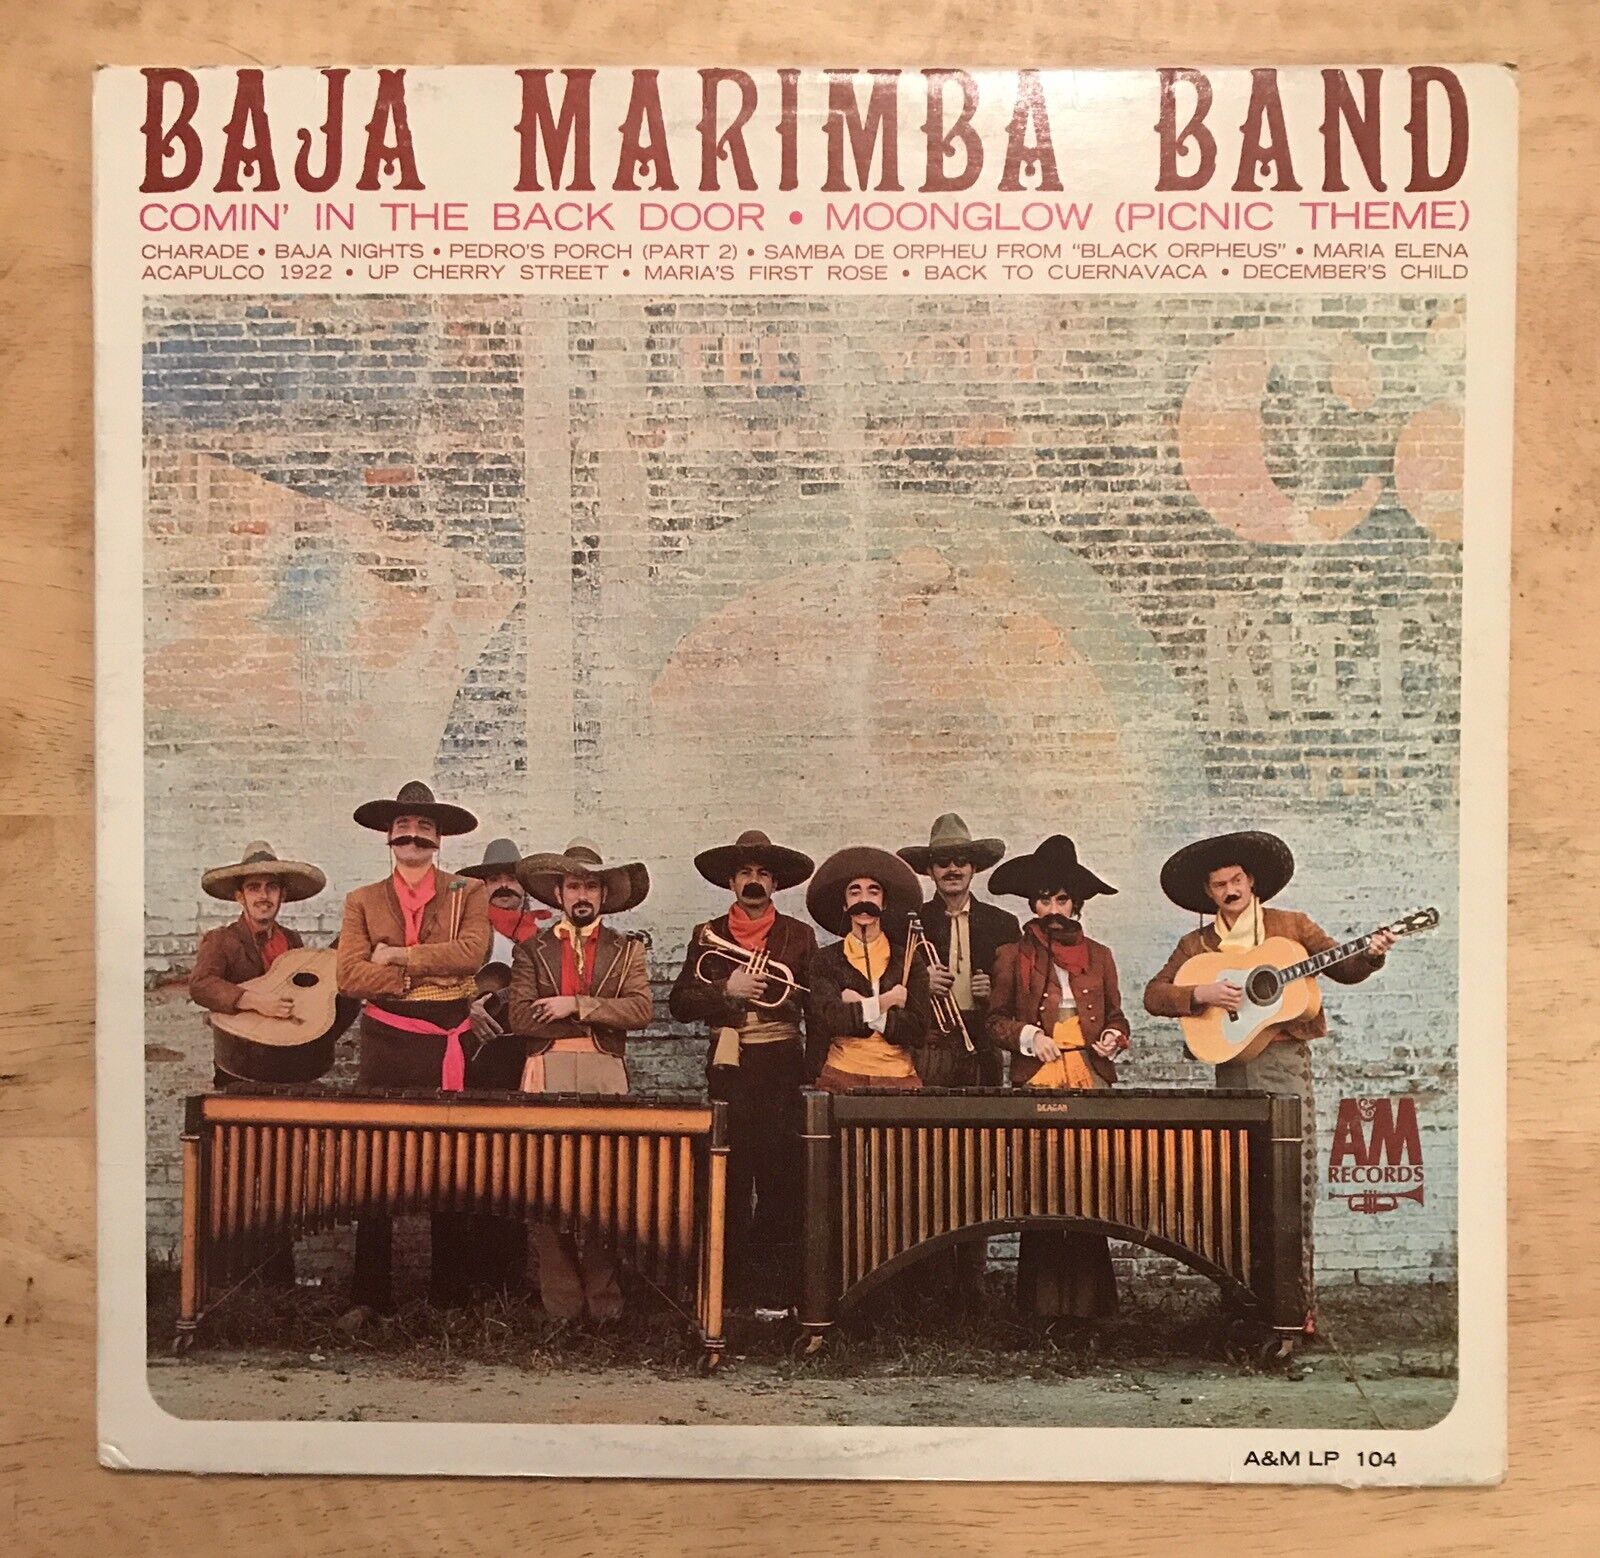 Vintage Baja Marimba Band – Baja Marimba Band 1970s LP Vinyl